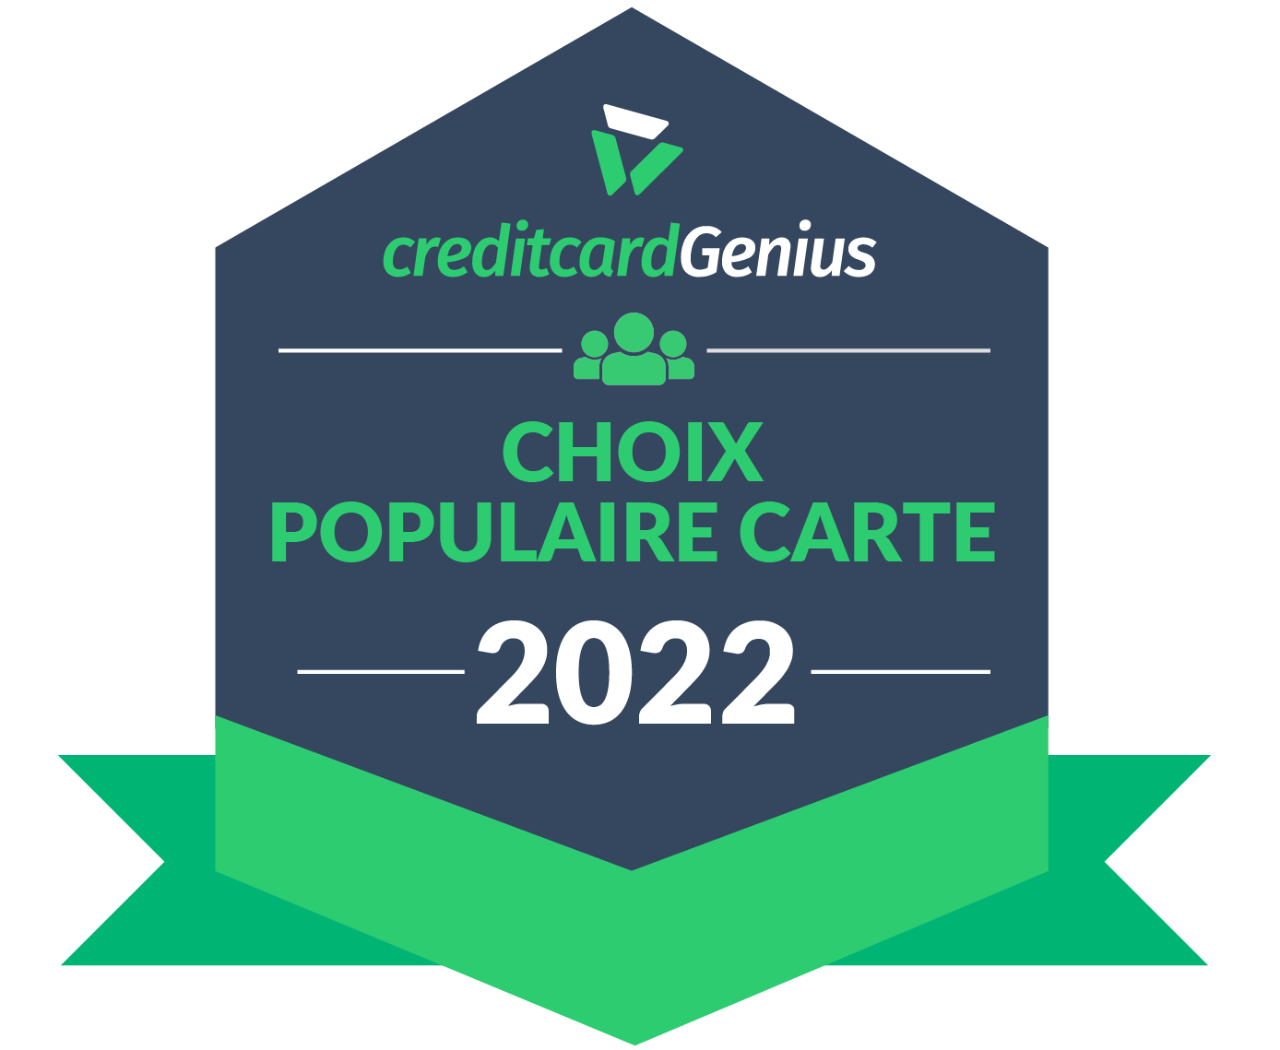 Insigne : Choix populaire carte de crédit en 2022, selon creditcardGenius